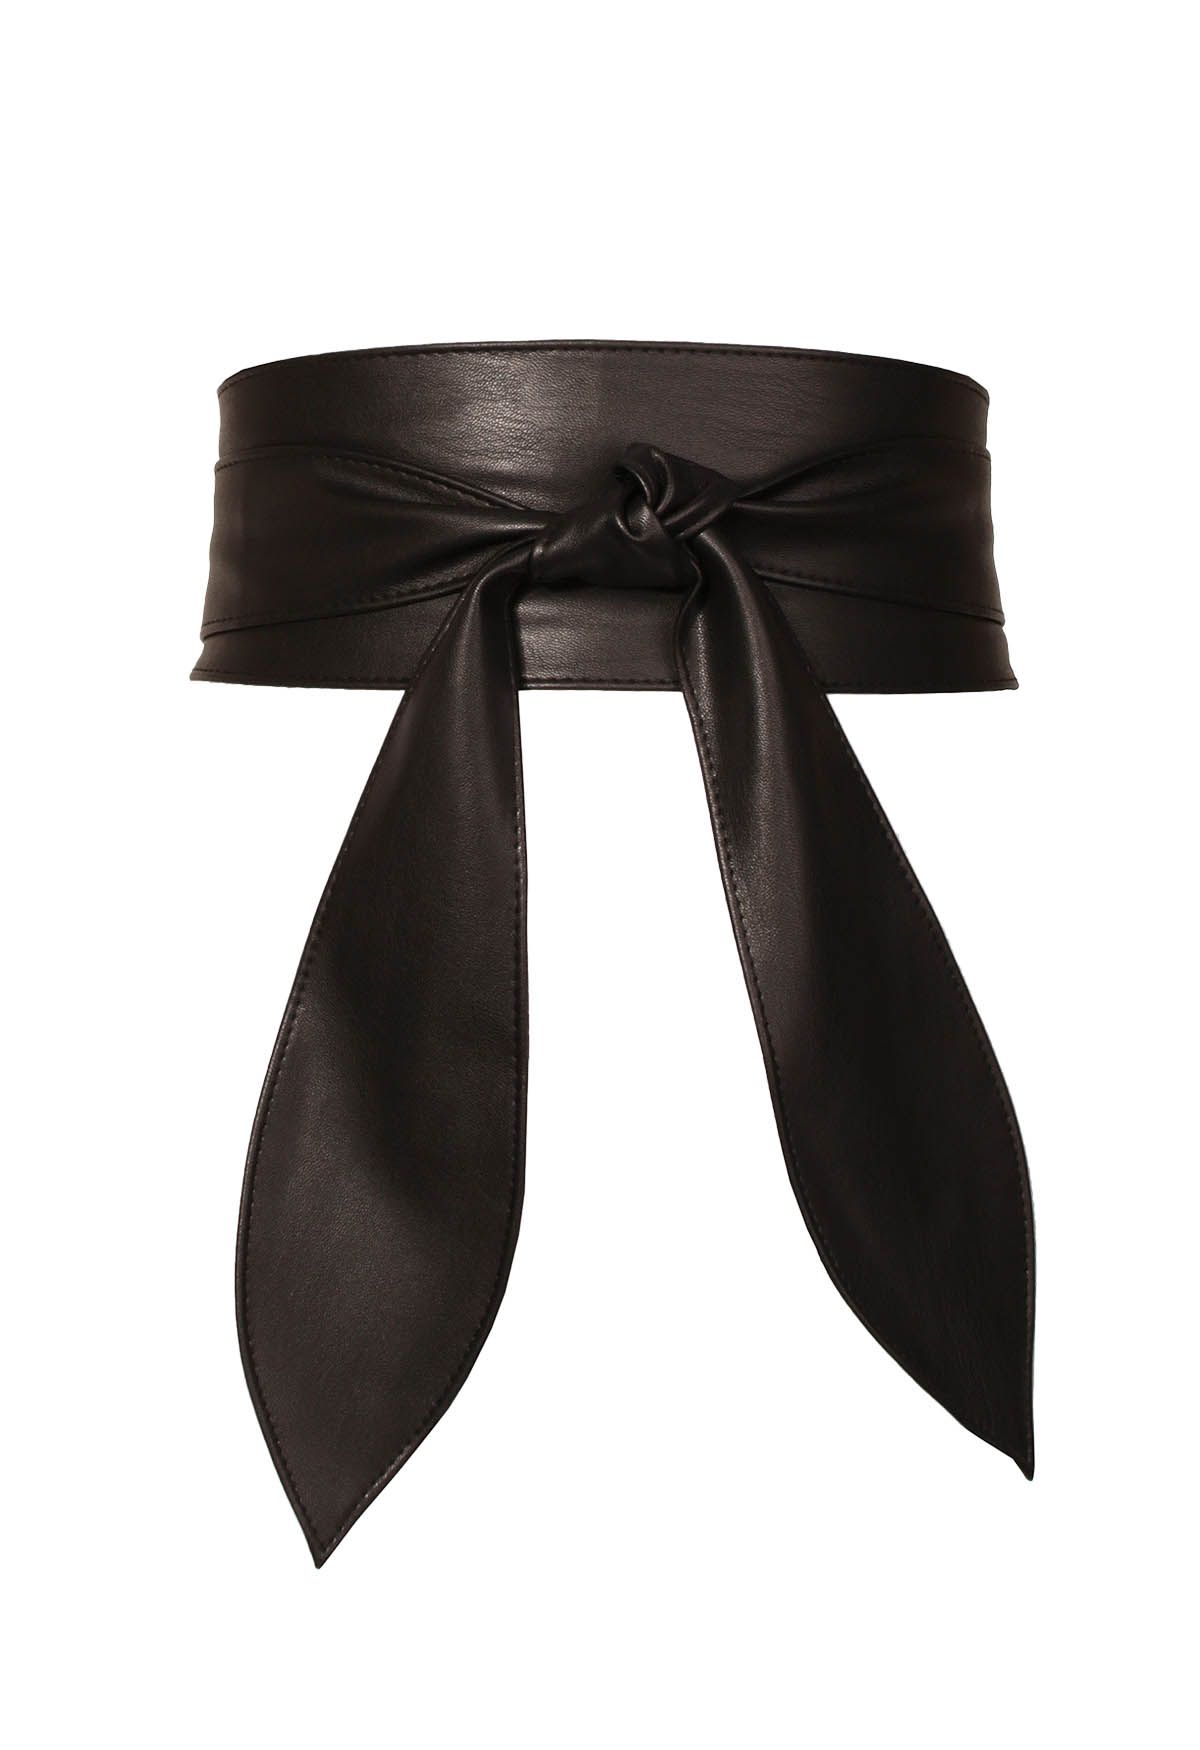 Ceinture corset avec noeud en simili cuir noir